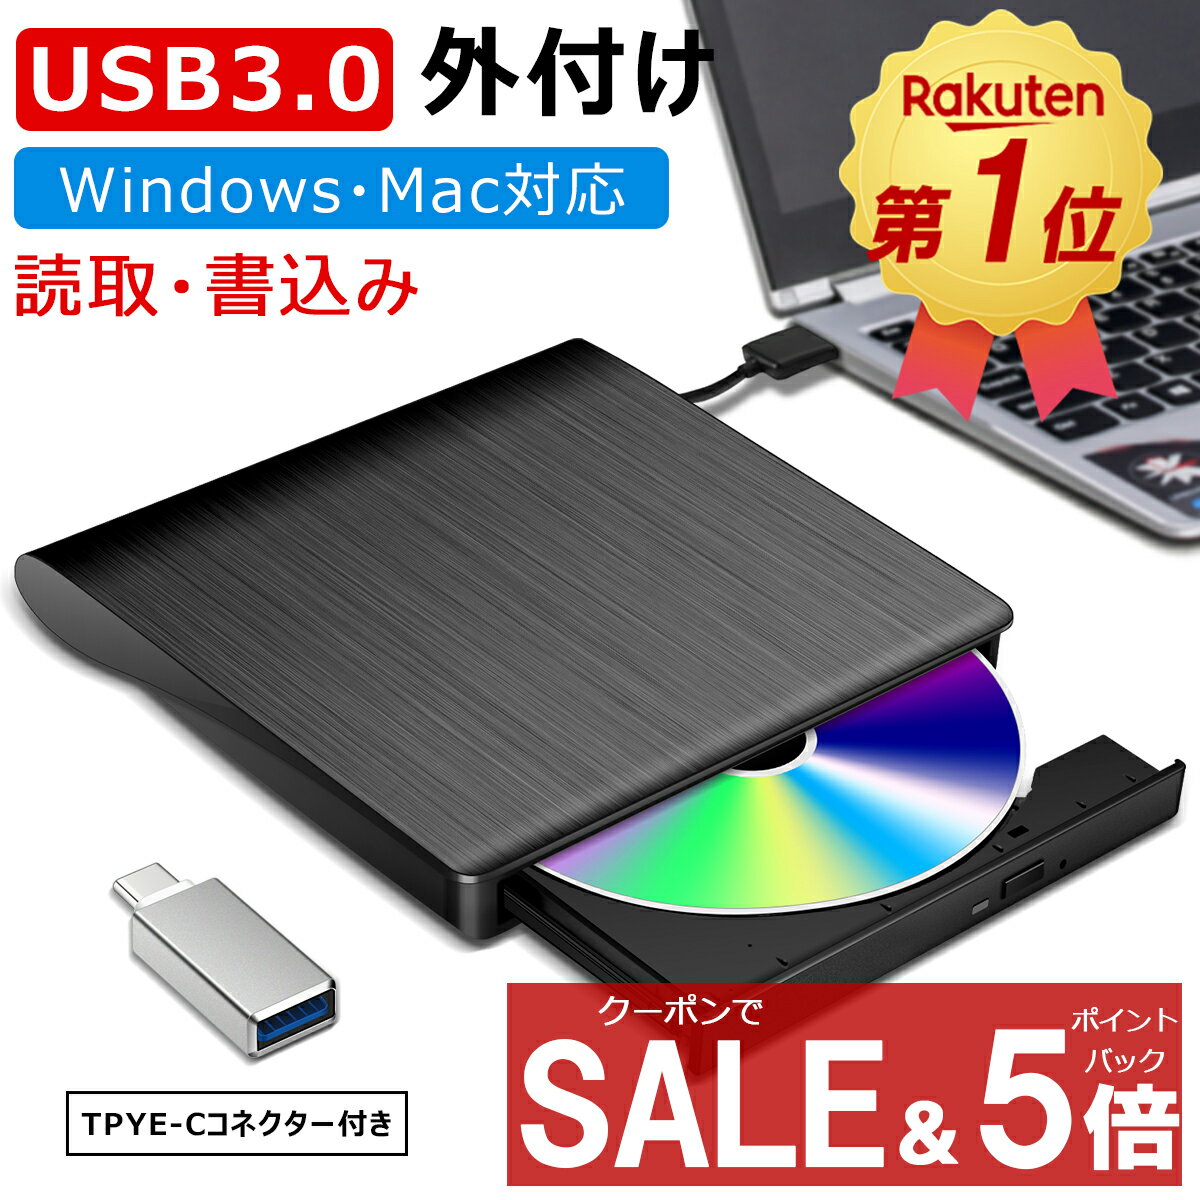 バッファロー(BUFFALO) RR-PW2-BK(ブラック) スマートフォン用CDレコーダー「ラクレコ」DVD再生対応モデル